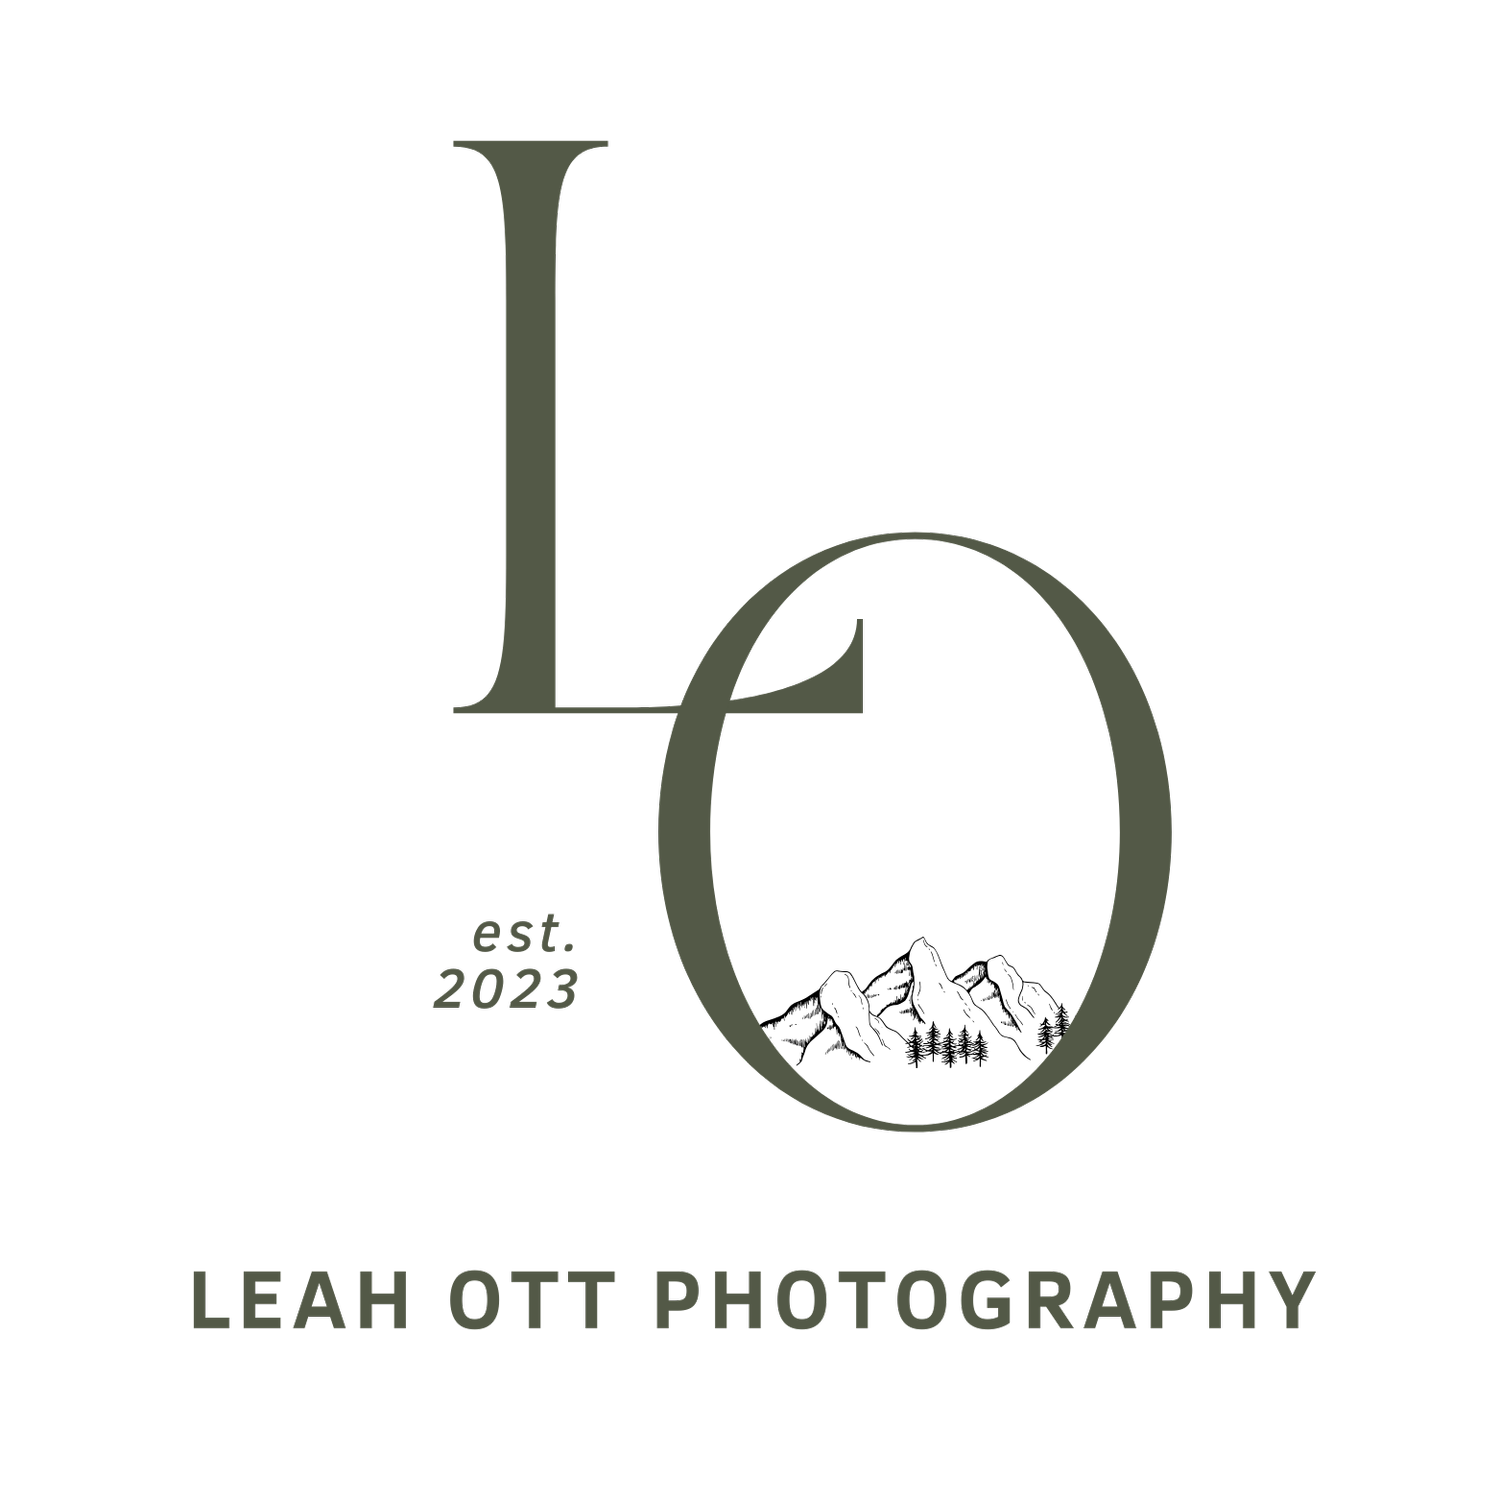                   Leah Ott Photography